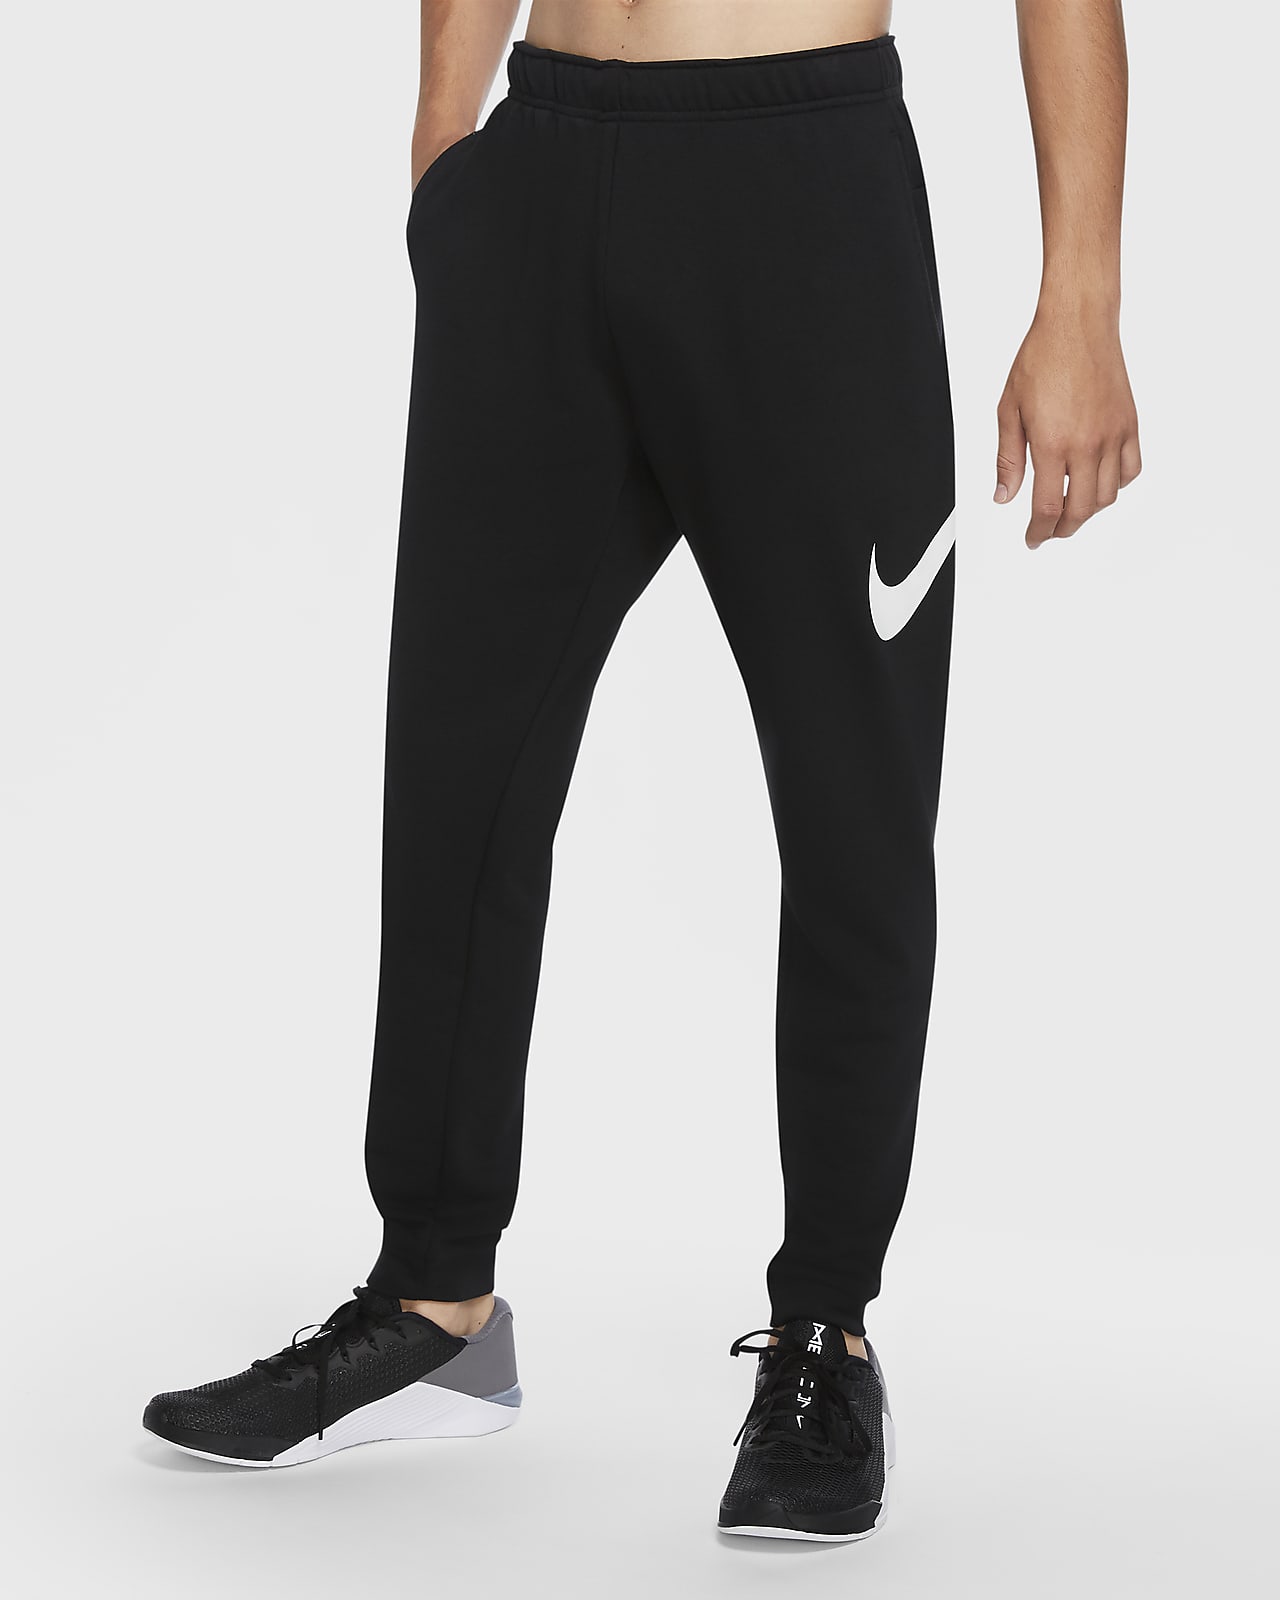 Pants de entrenamiento entallados para hombre Nike Dri-FIT